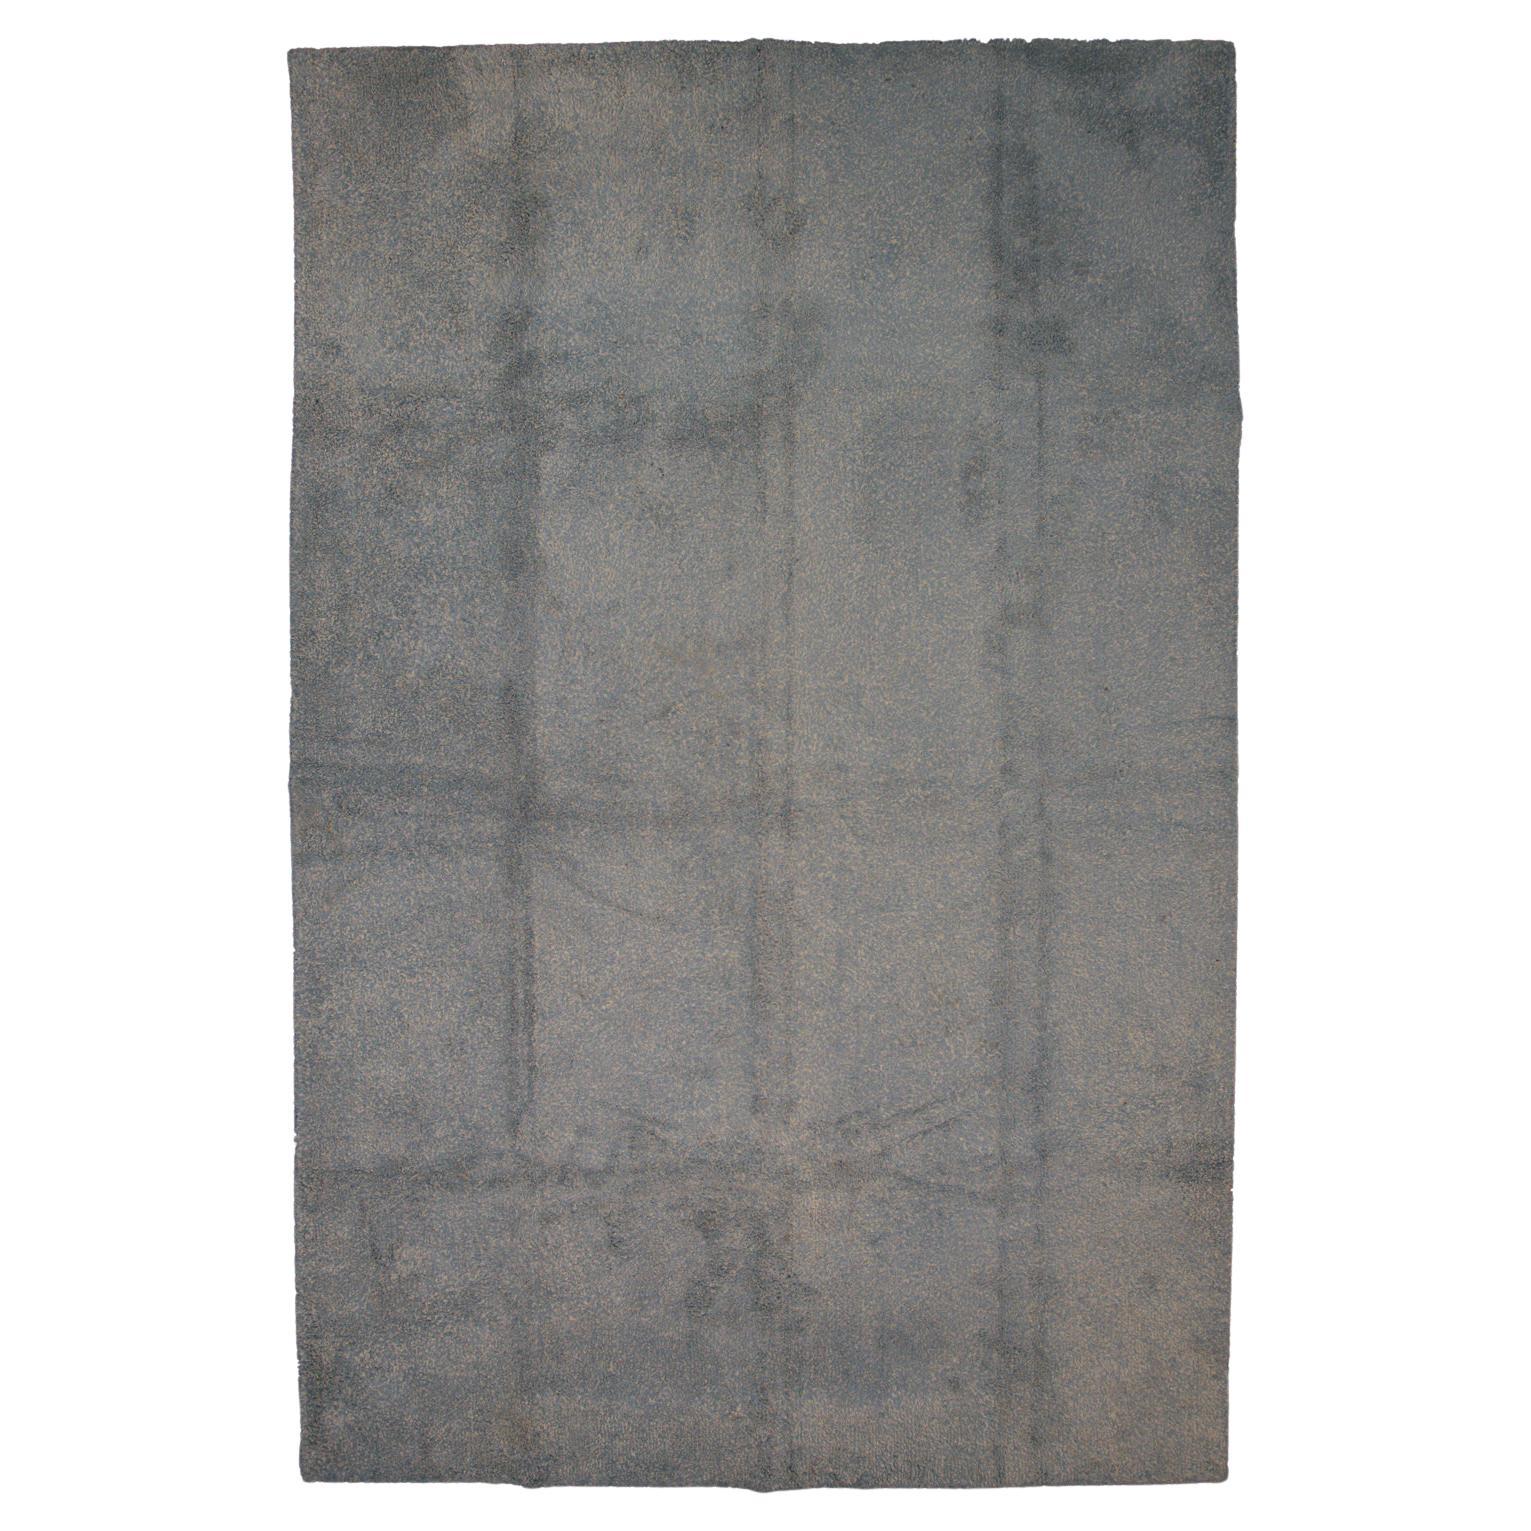 Europäischer Teppich, minimalistisches Design, grau, 1920-1950